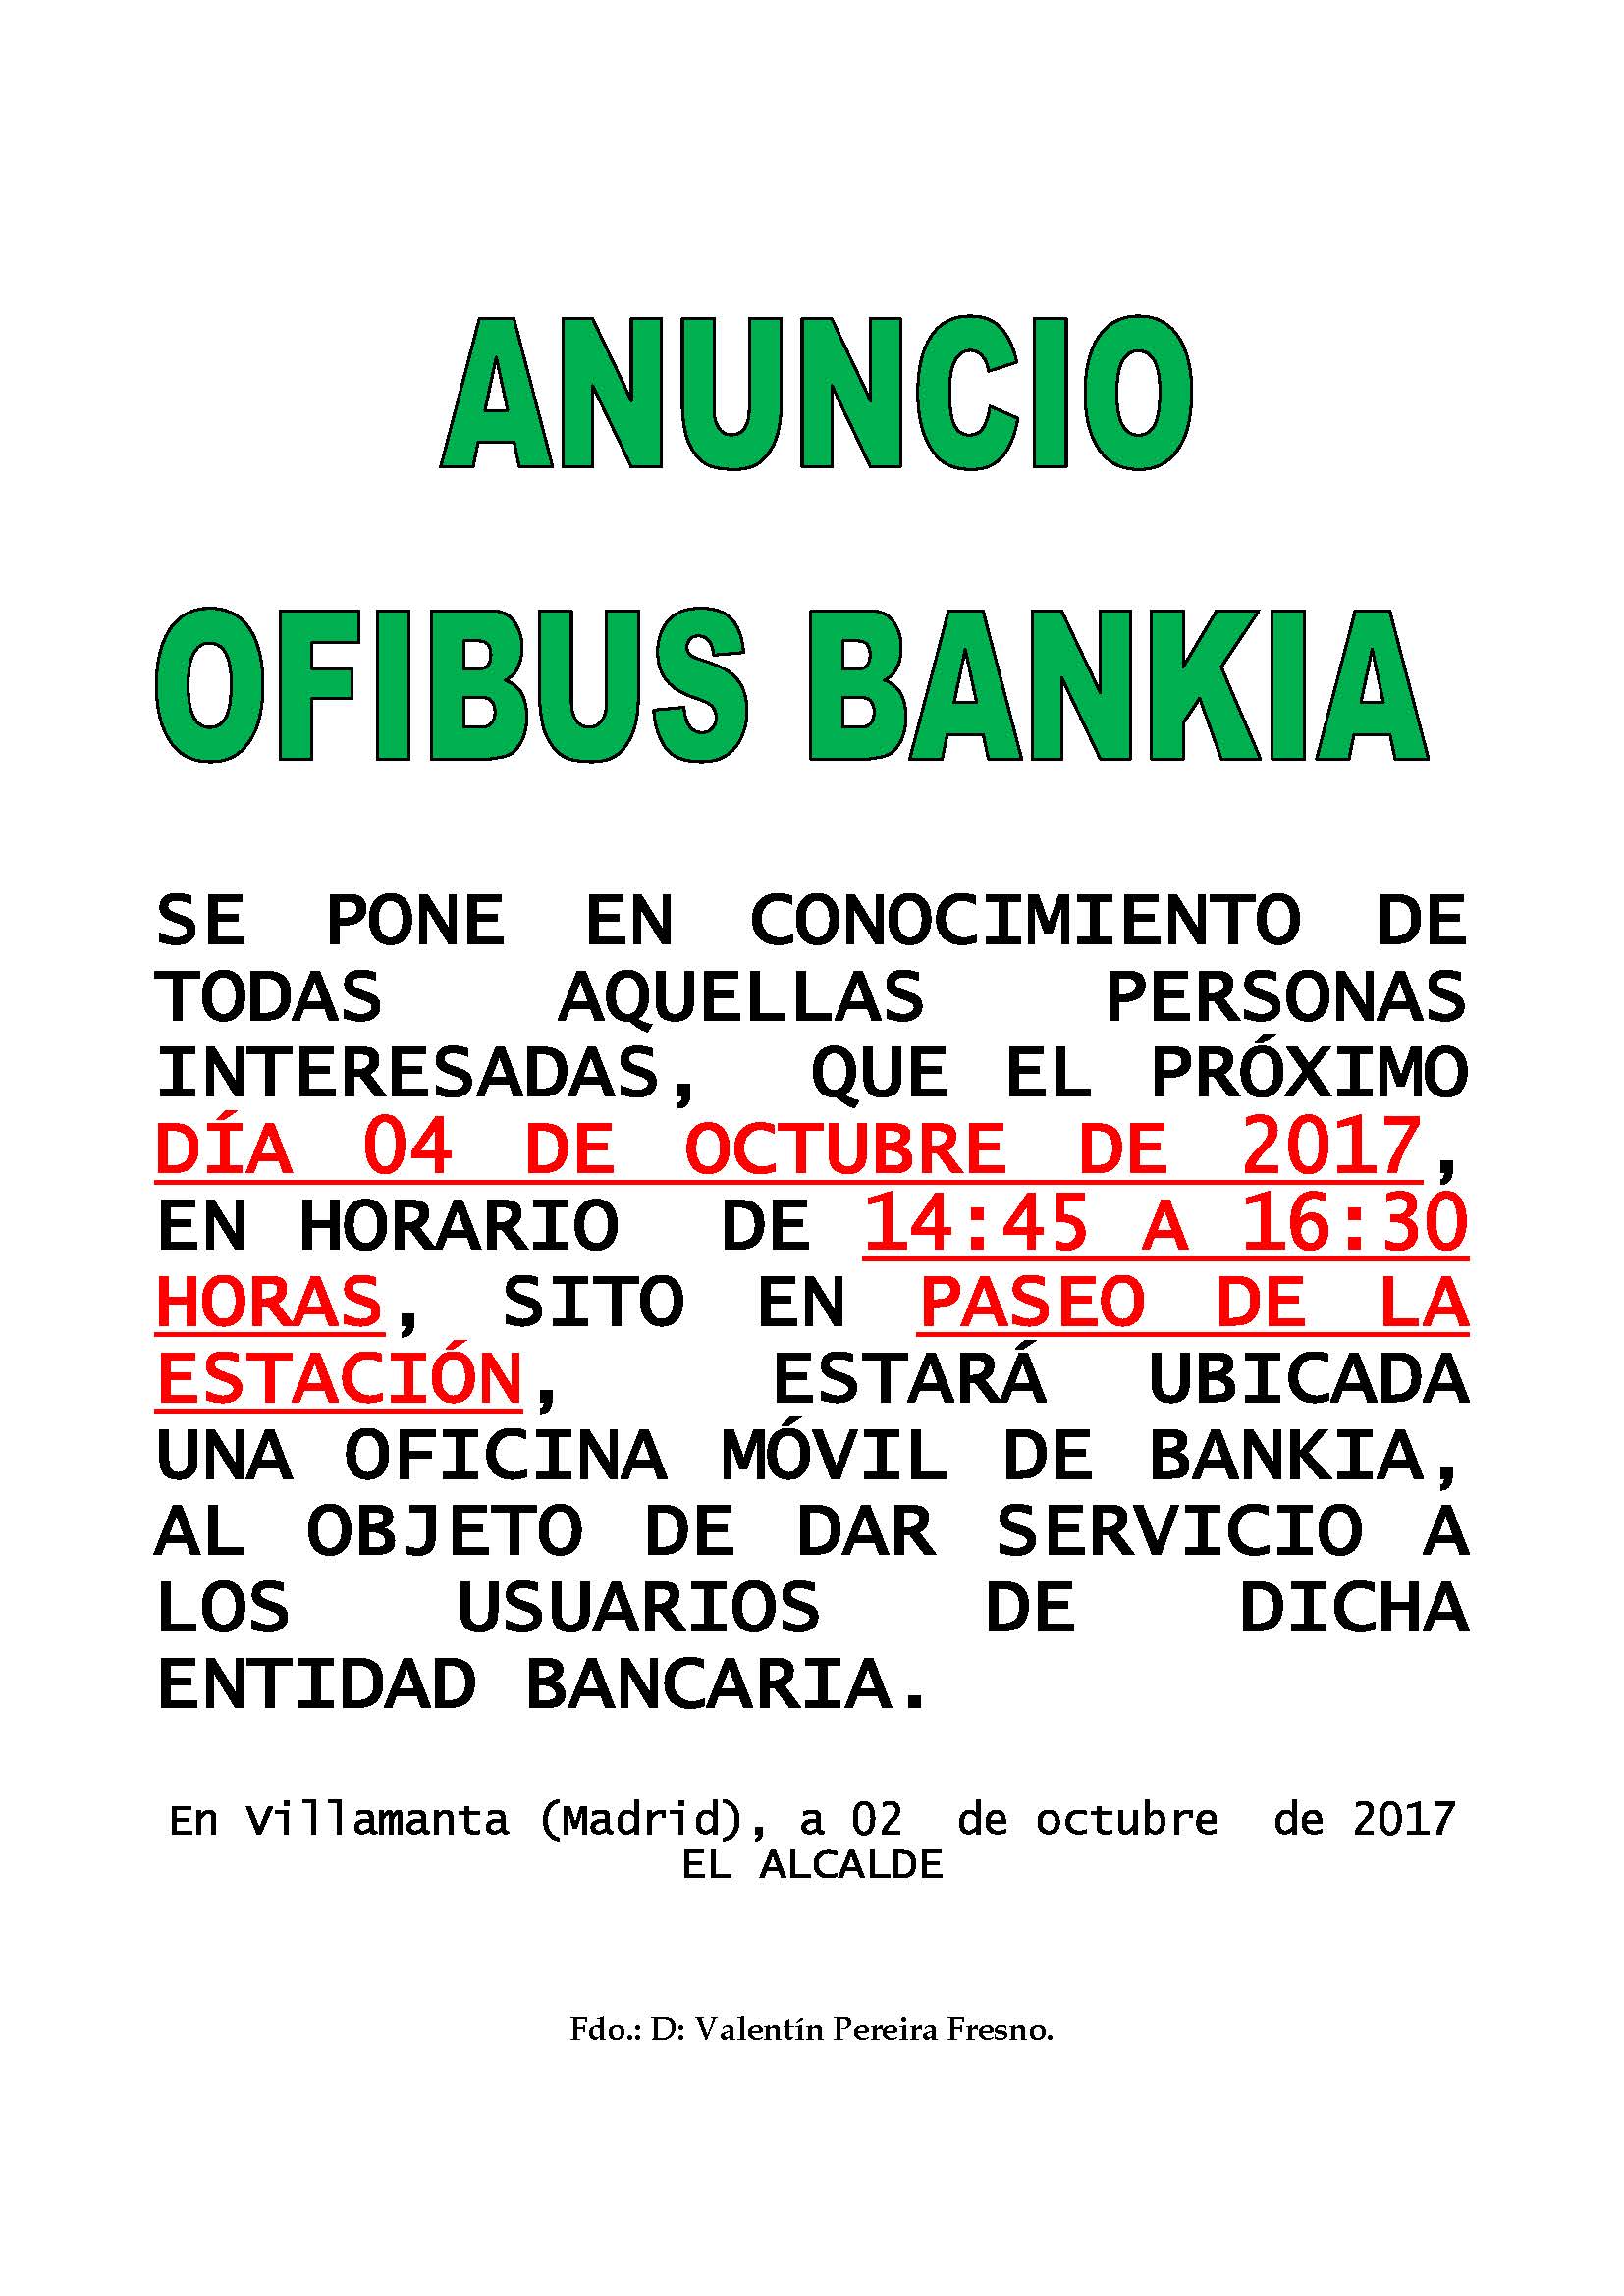 Ofibus Bankia 4 de octubre